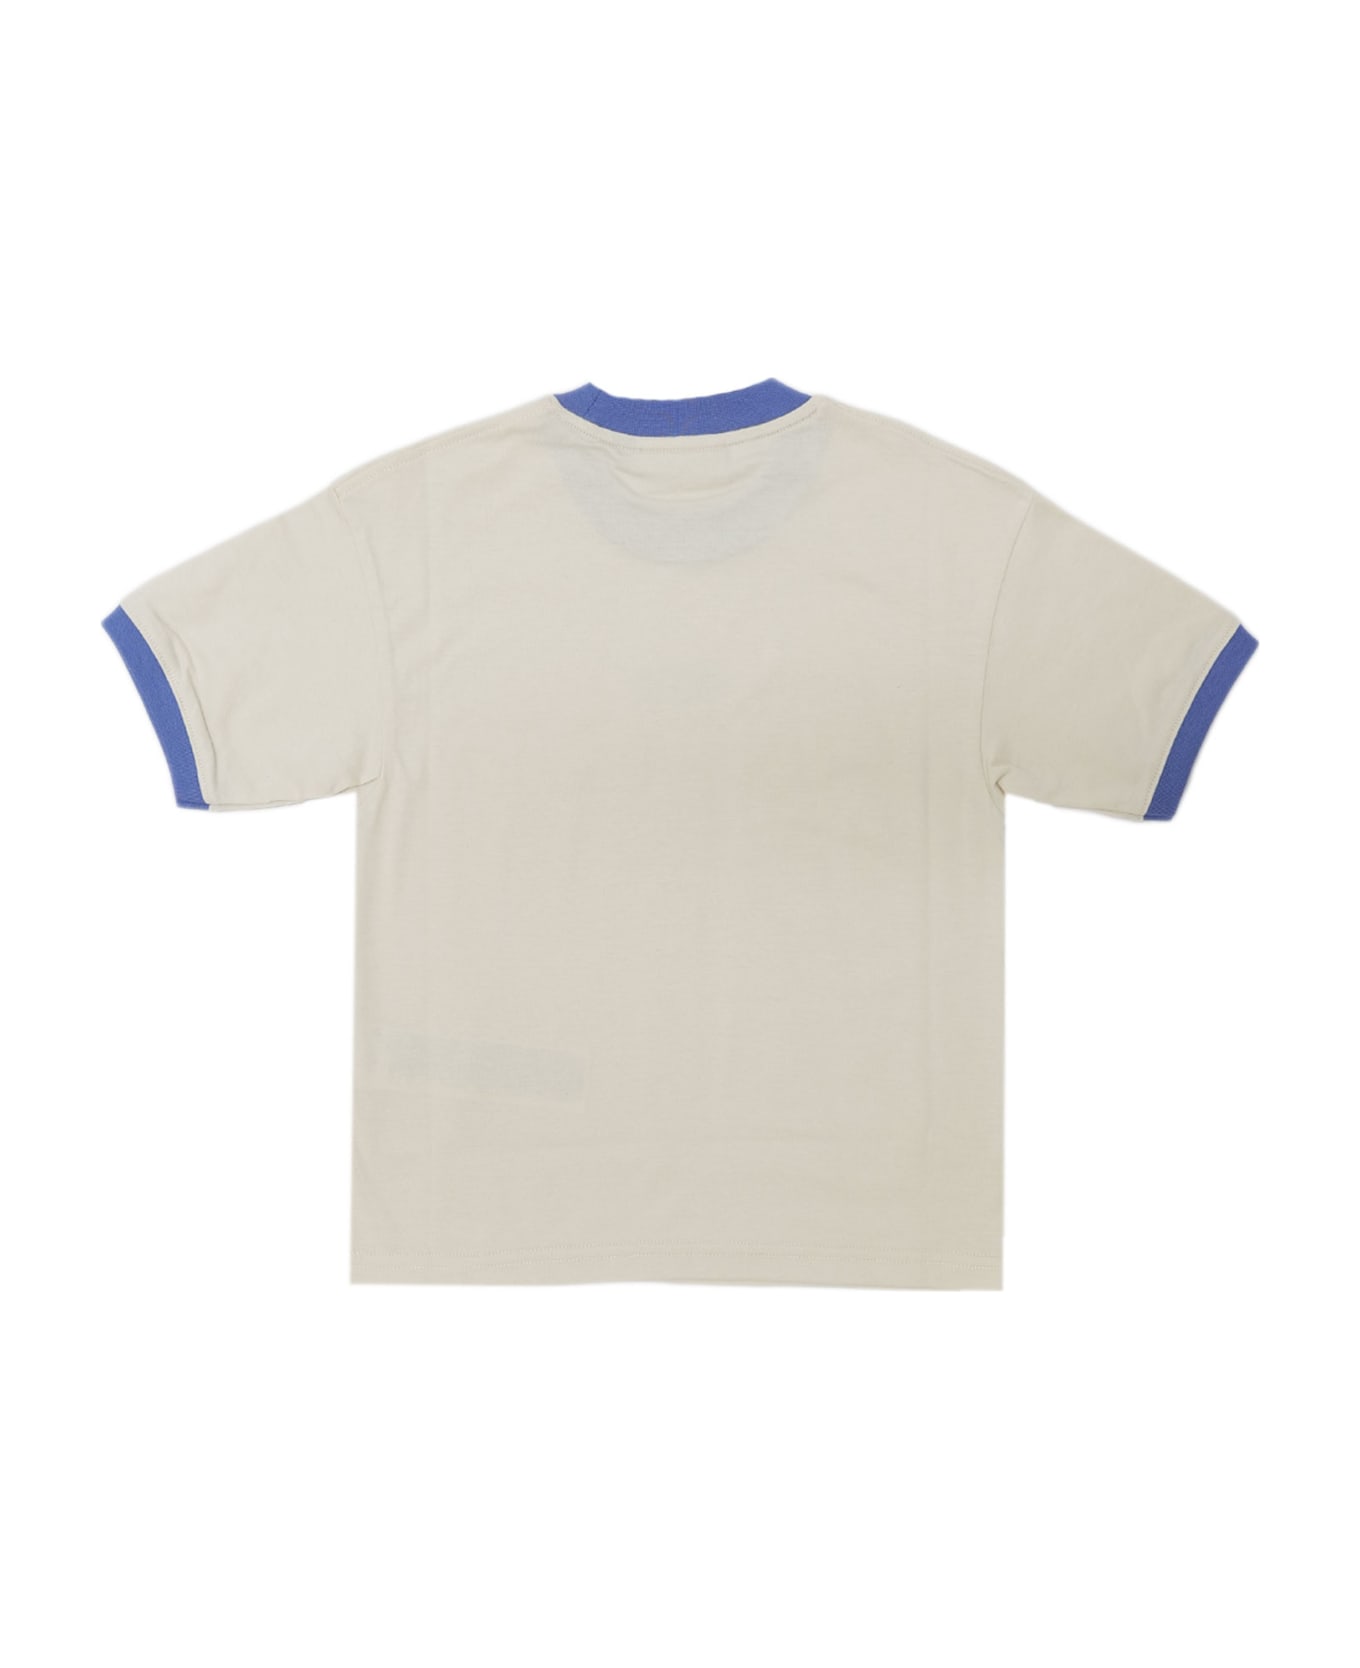 GCDS T-shirt - Blue